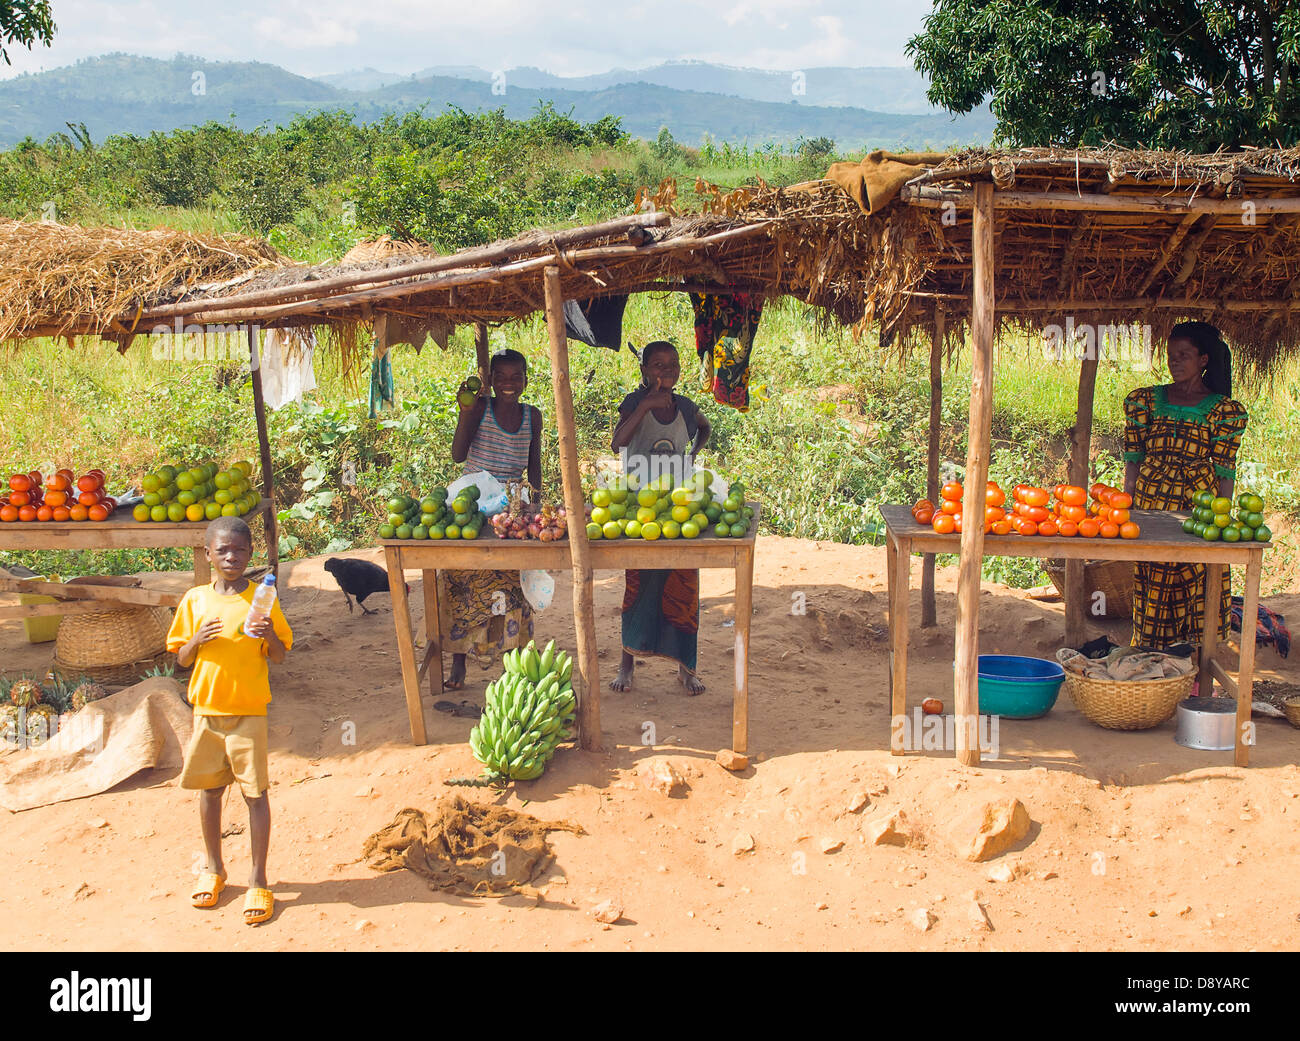 Marktstand Gemüse neben der Straße afrikanischen burundischen östlichen Afrika weibliche Frauen Mädchen Lady Kinder Learning-Lektionen zu verkaufen Stockfoto